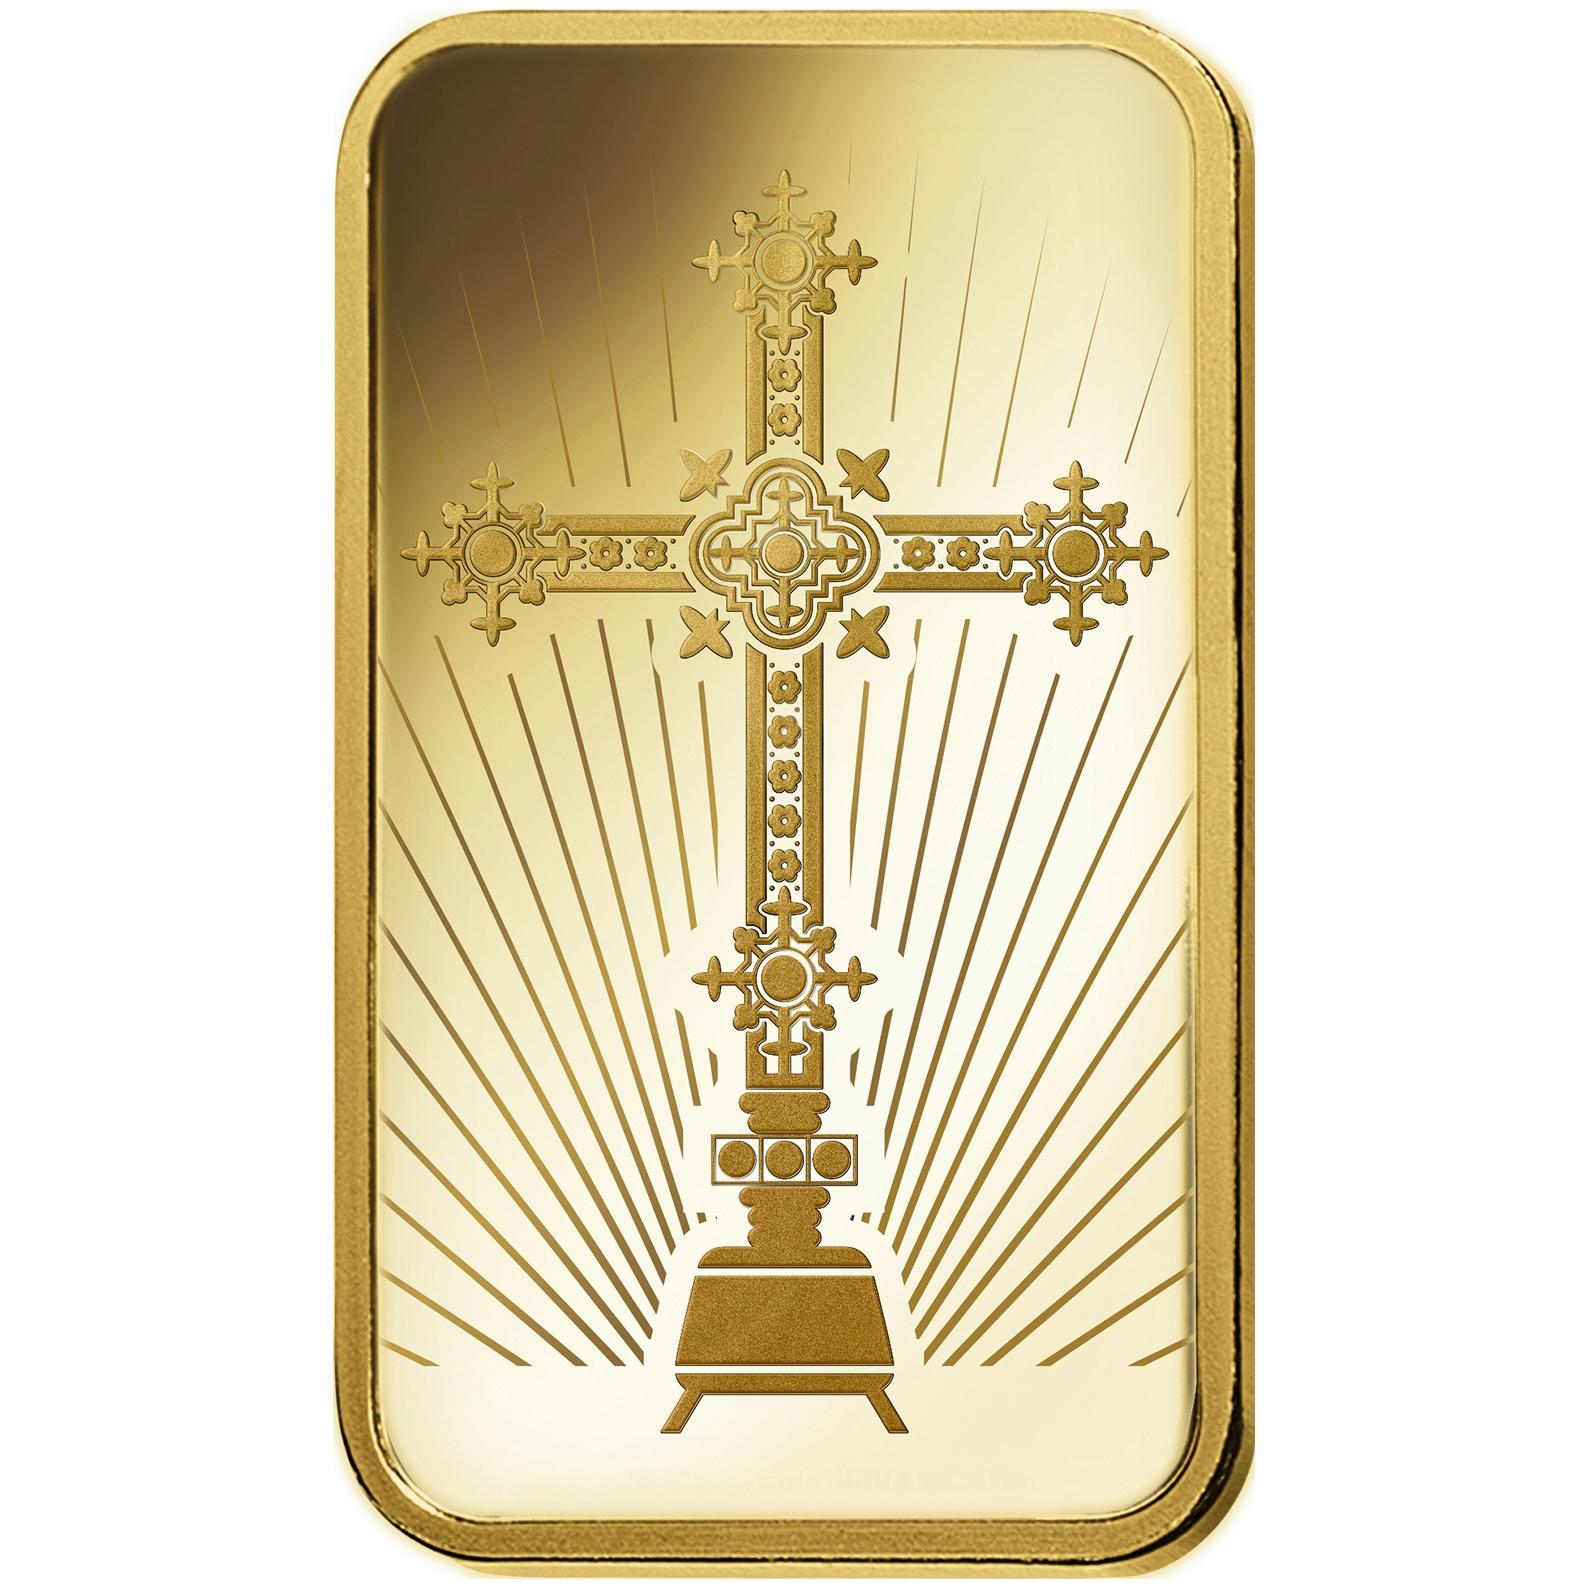 Compare oro, 1 oncia d'oro puro Romanesque Cross - PAMP Svizzera - Front